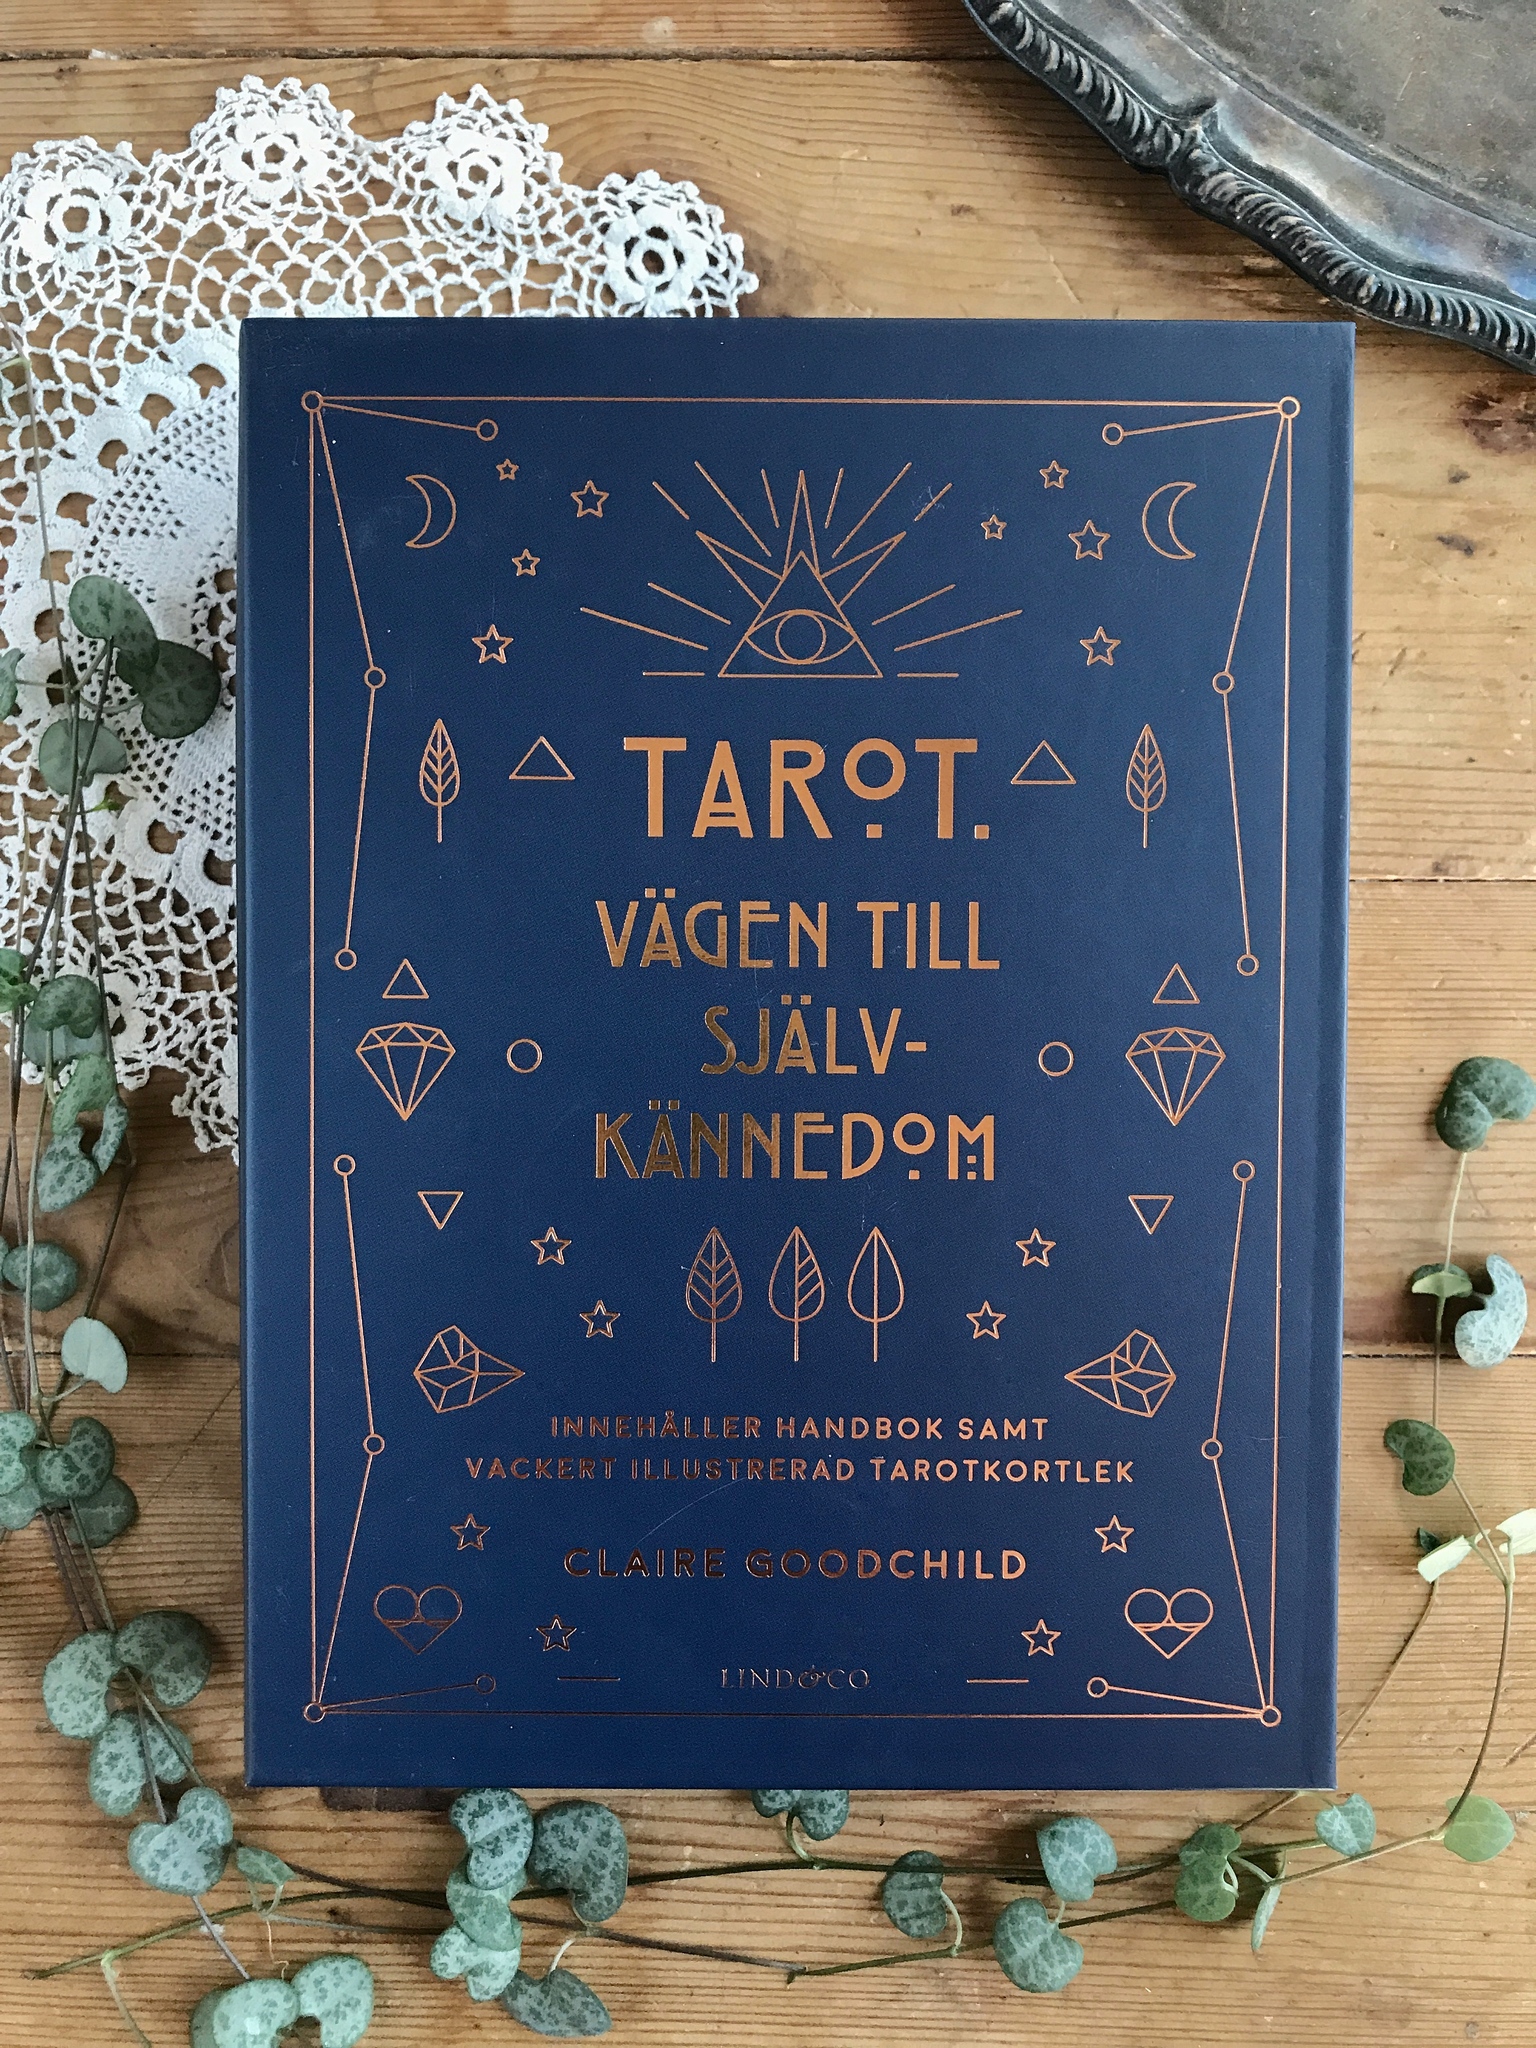 NYHET! Tarot, vägen till självkännedom, tarotbox